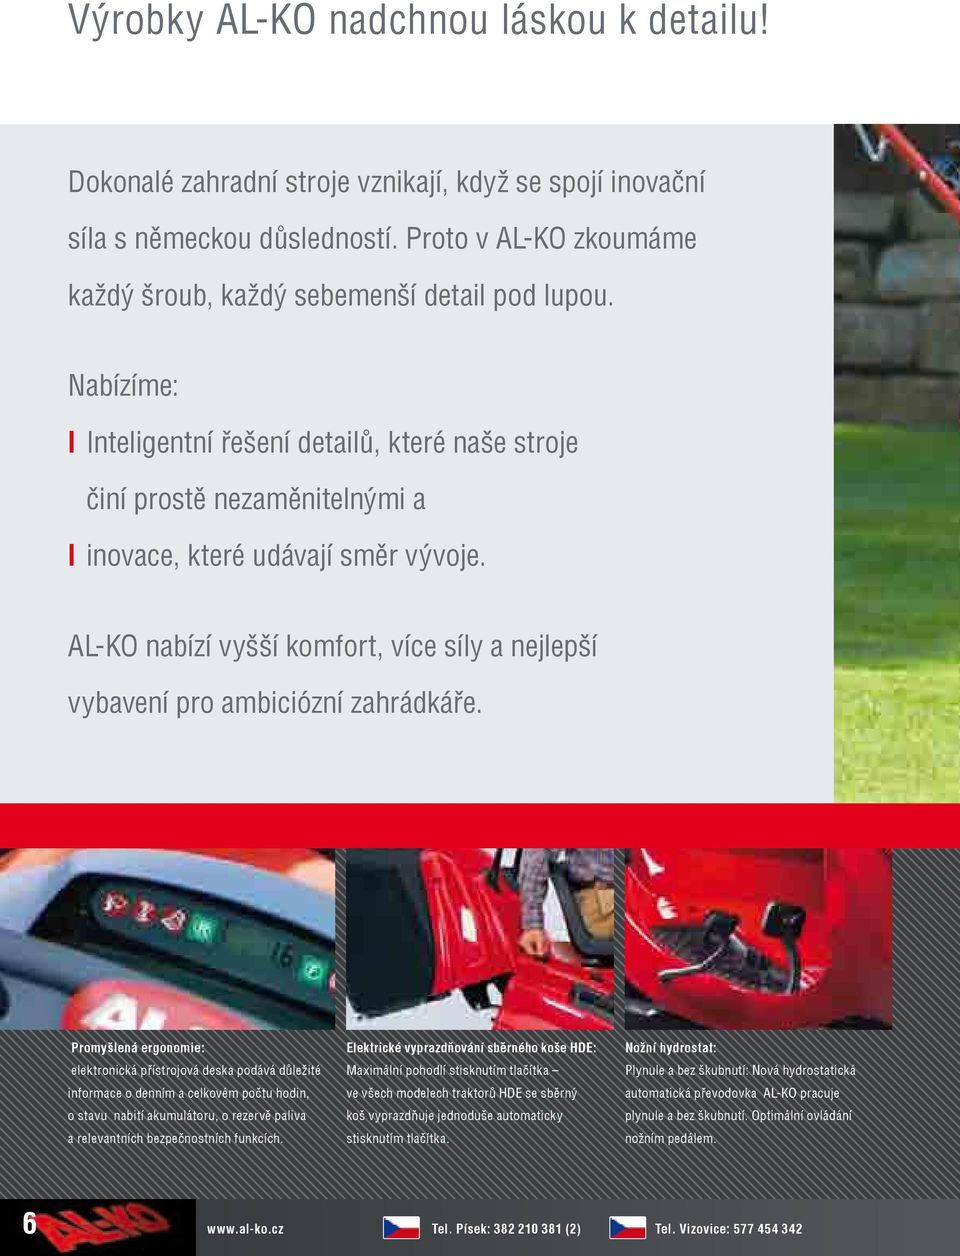 AL-KO nabízí vyšší komfort, více síly a nejlepší vybavení pro ambiciózní zahrádkáře.